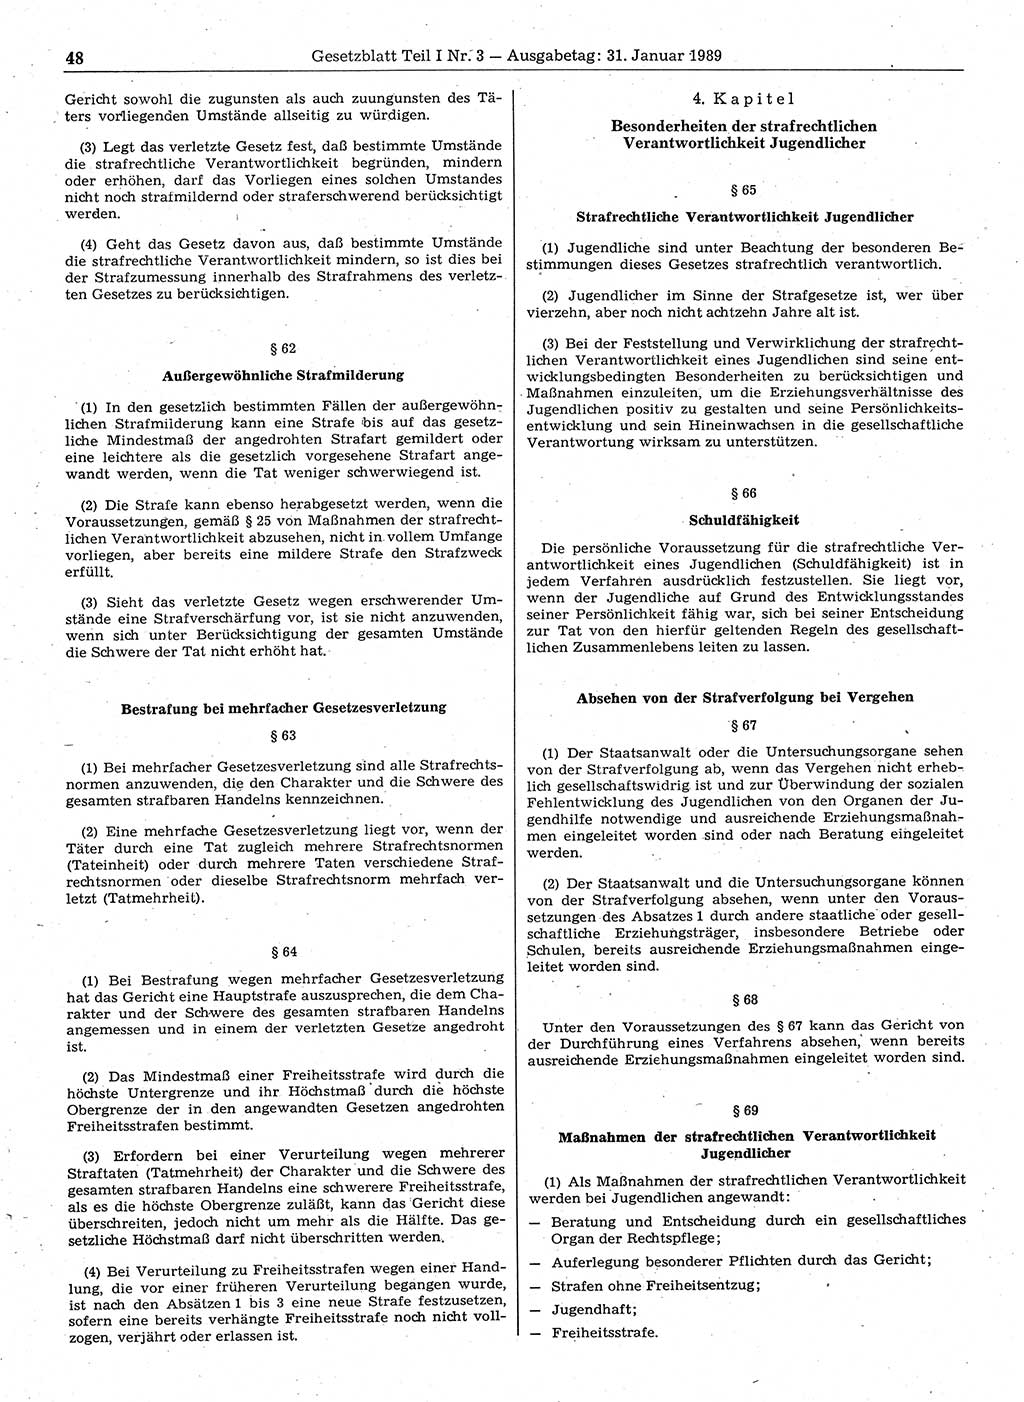 Gesetzblatt (GBl.) der Deutschen Demokratischen Republik (DDR) Teil Ⅰ 1989, Seite 48 (GBl. DDR Ⅰ 1989, S. 48)